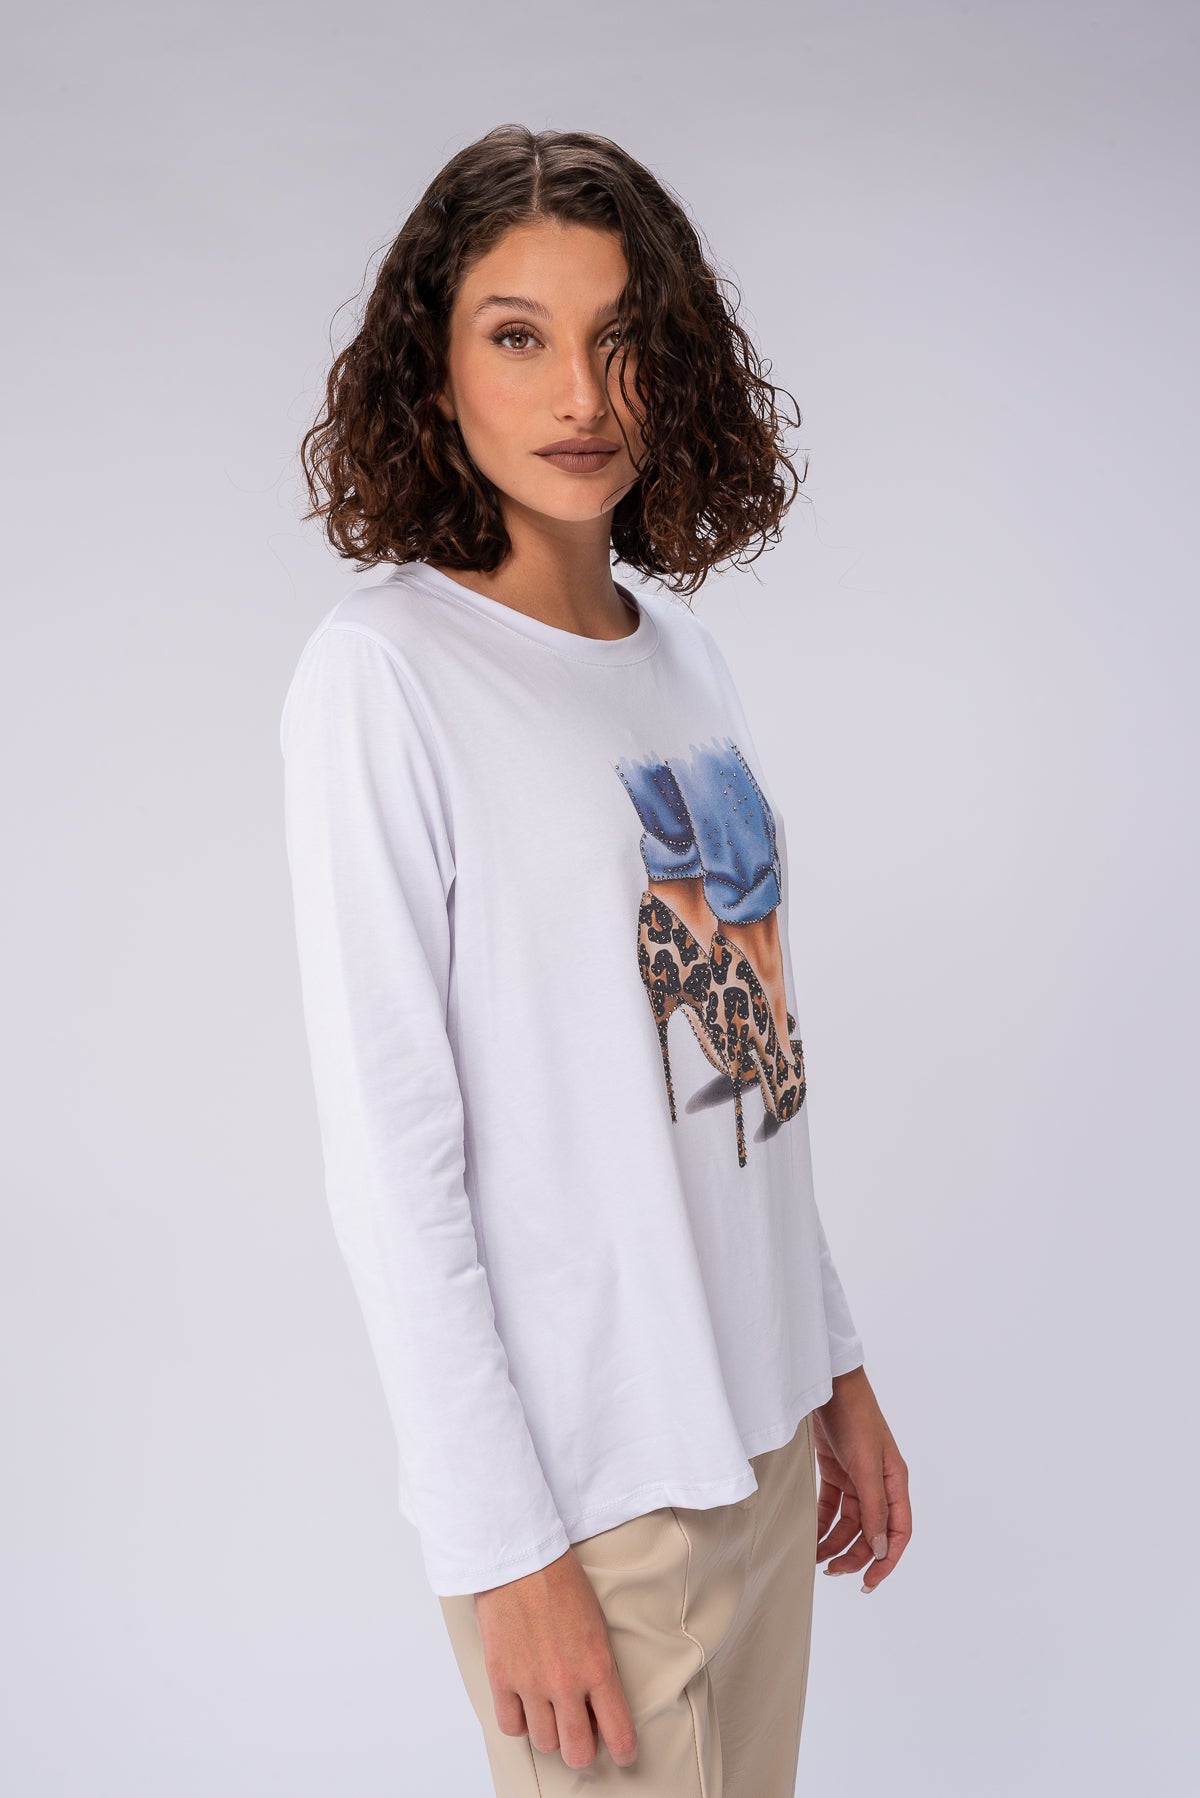 Remera Style (blanca) | Blusas, Camisas y Remeras | Viviana Méndez - Remera Style (blanca) - Viviana Méndez